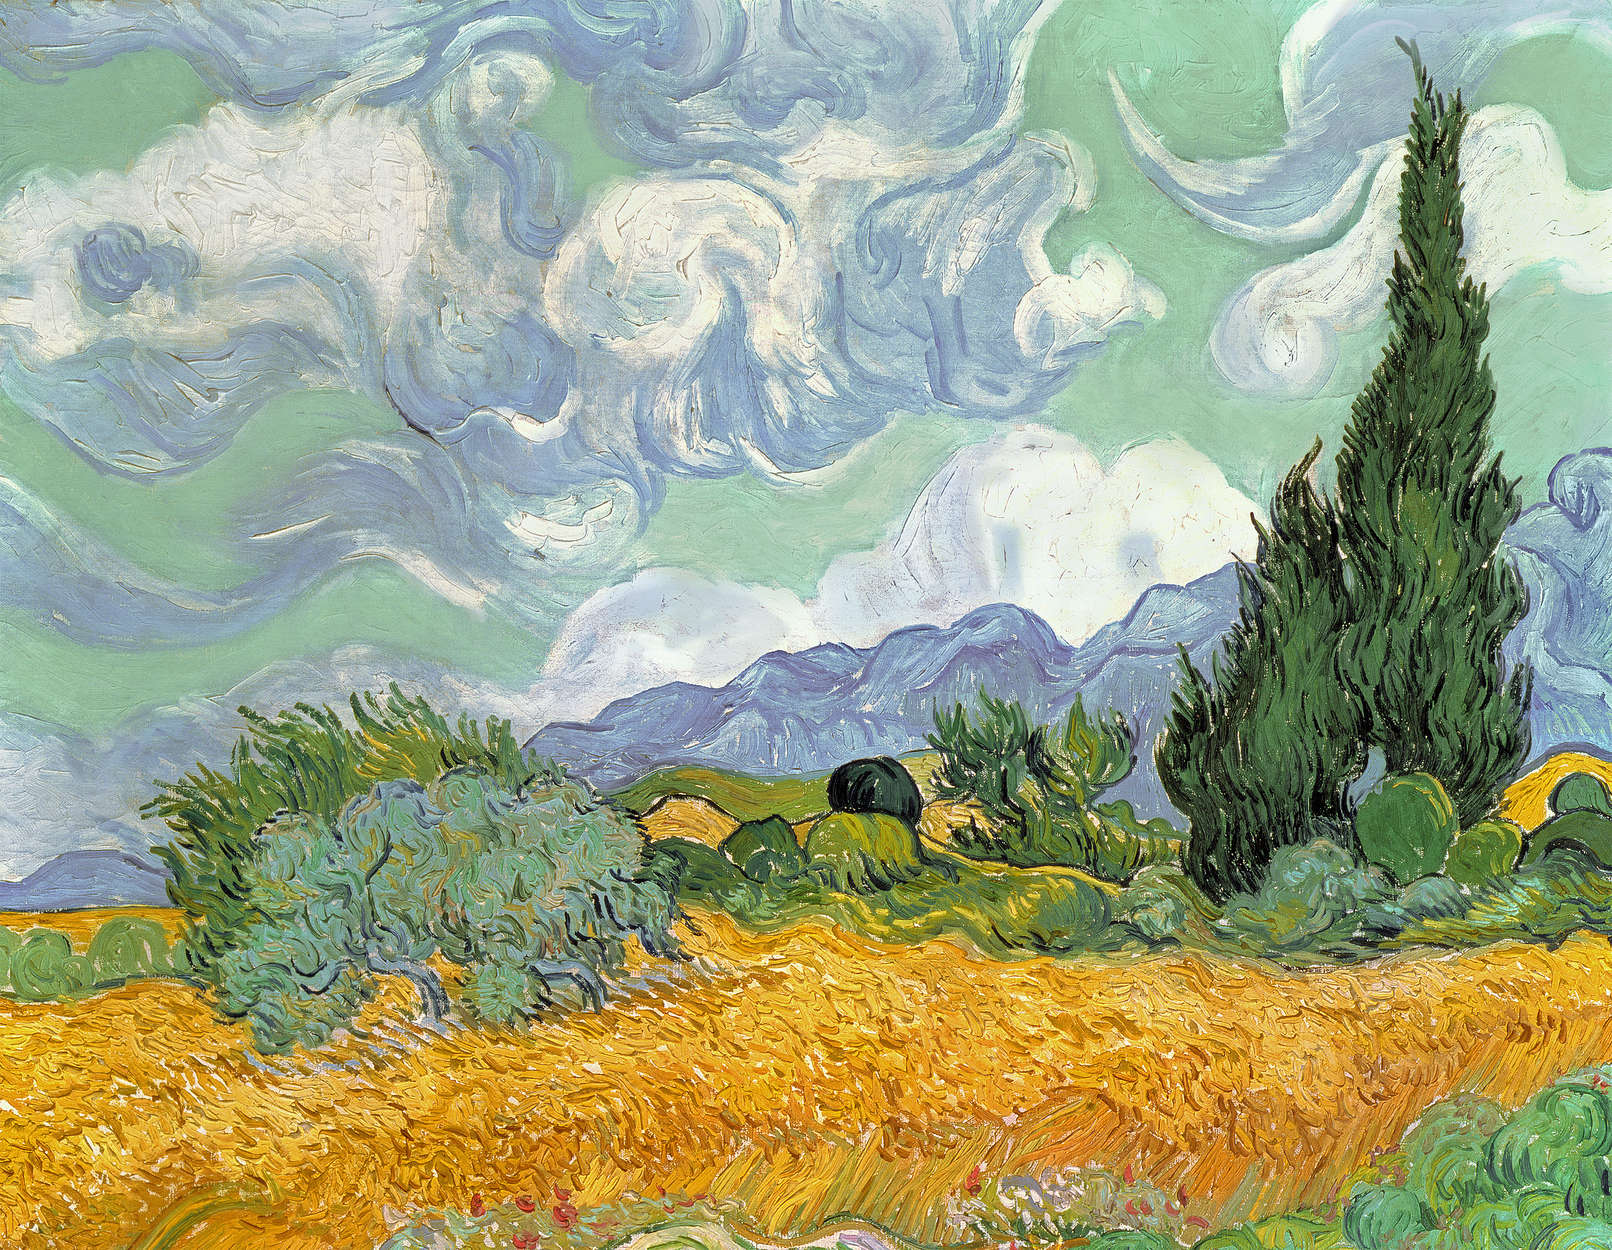             Mural "Campo de trigo con cipreses" de Vincent van Gogh
        